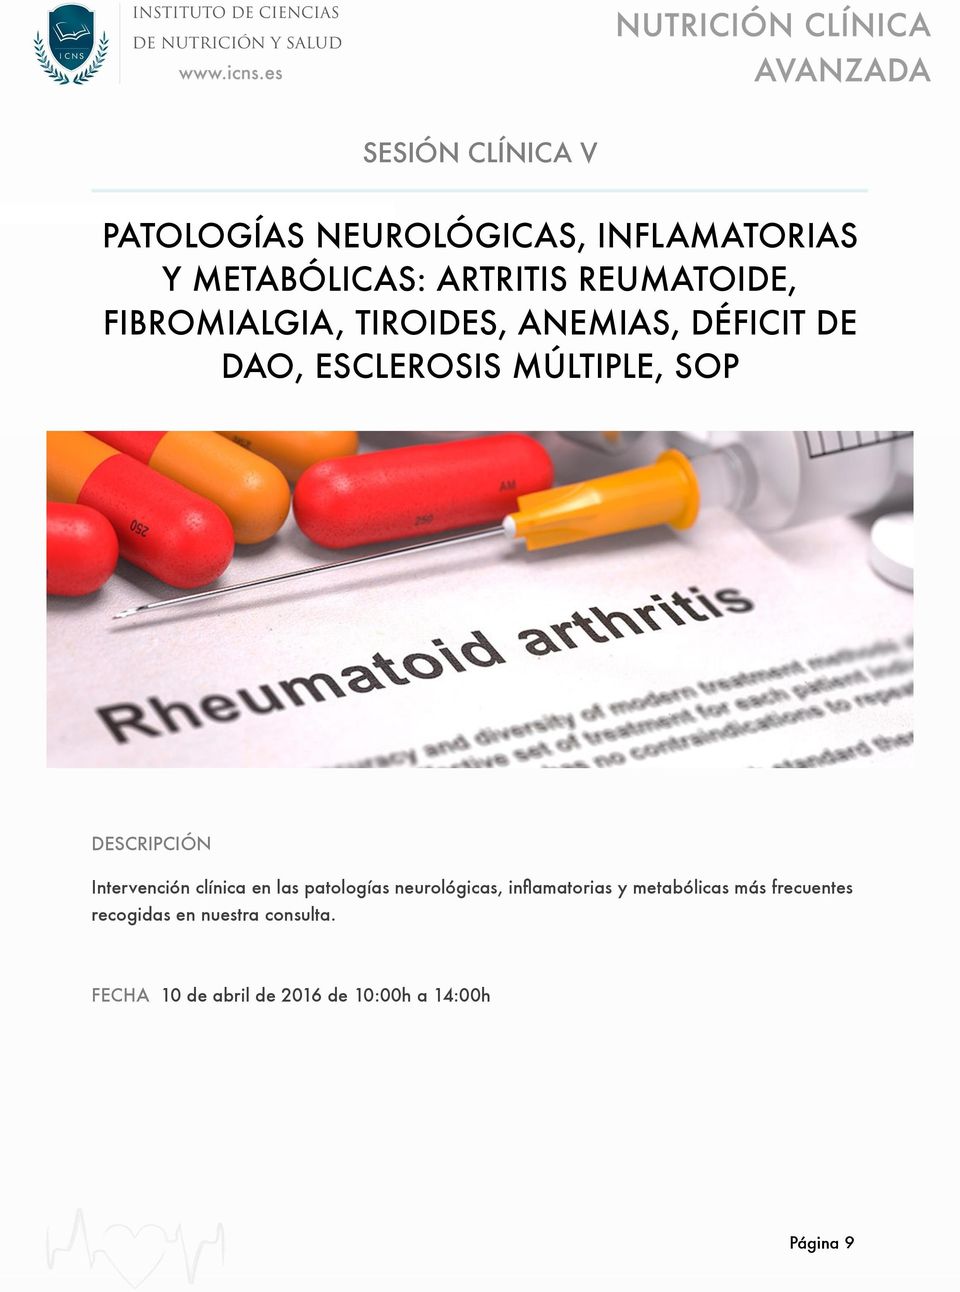 Intervención clínica en las patologías neurológicas, inflamatorias y metabólicas más